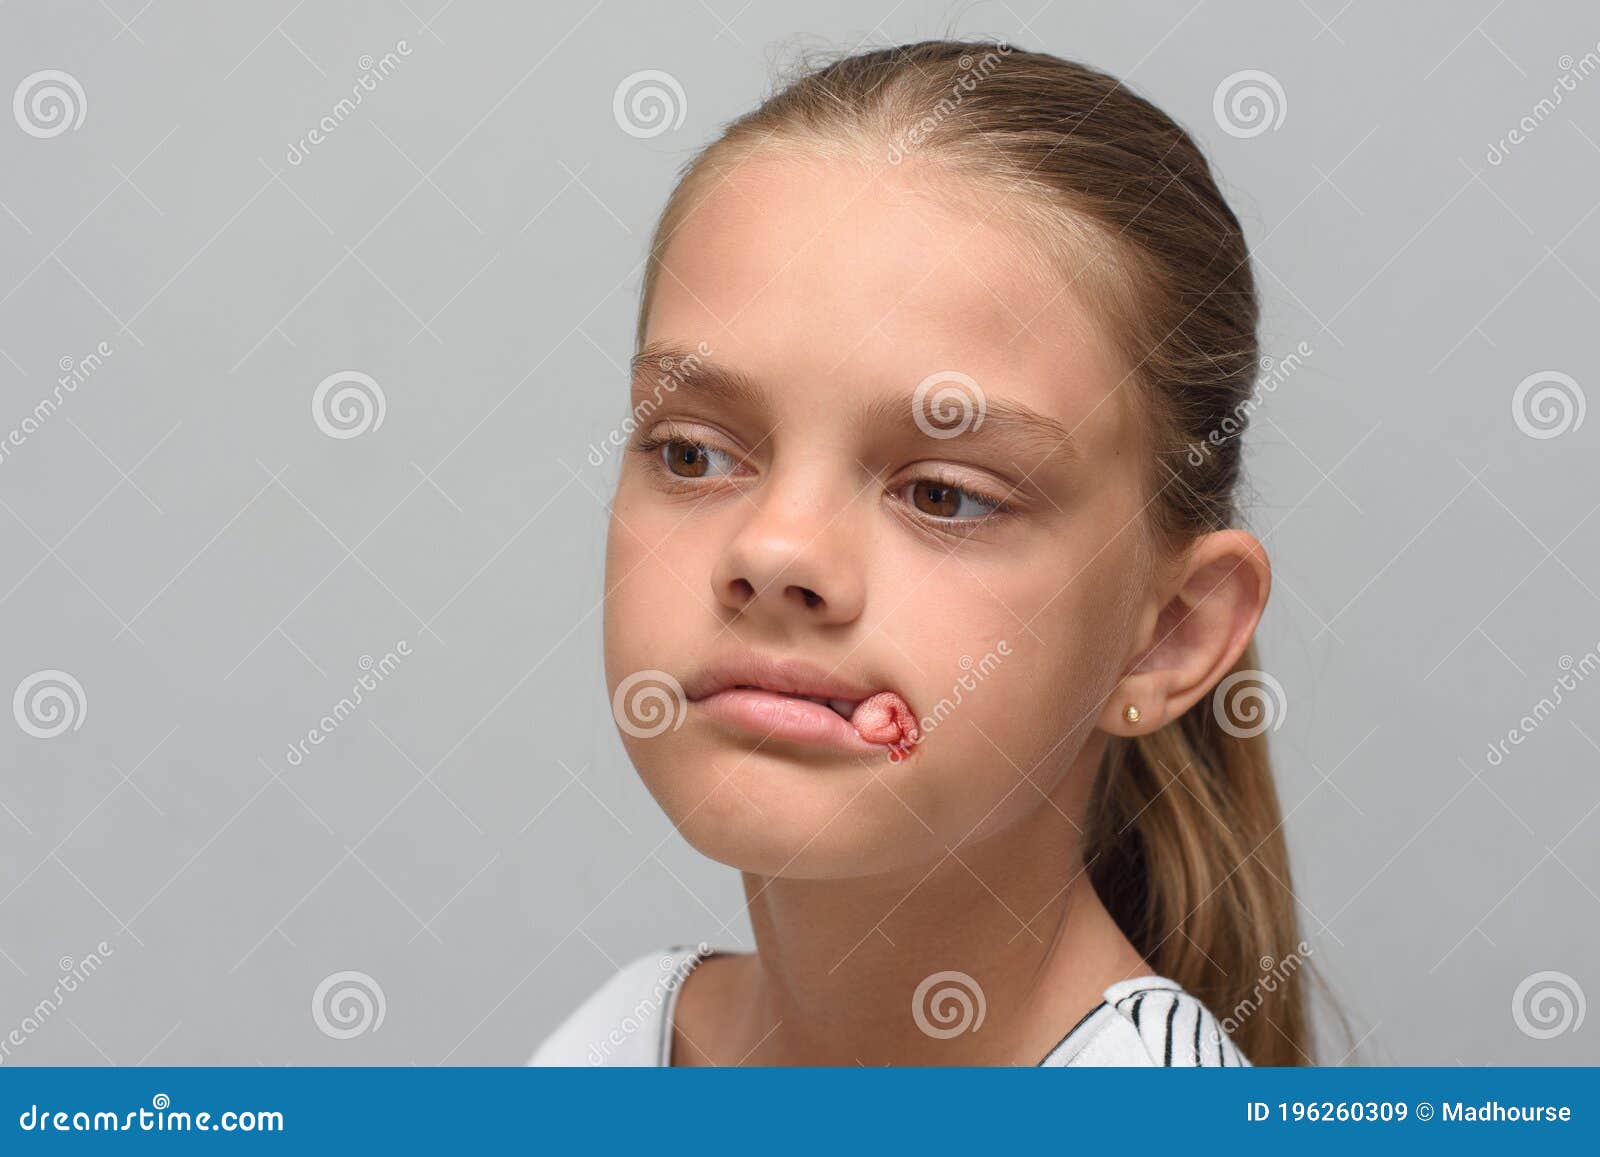 юной девочке сперму в рот фото 98